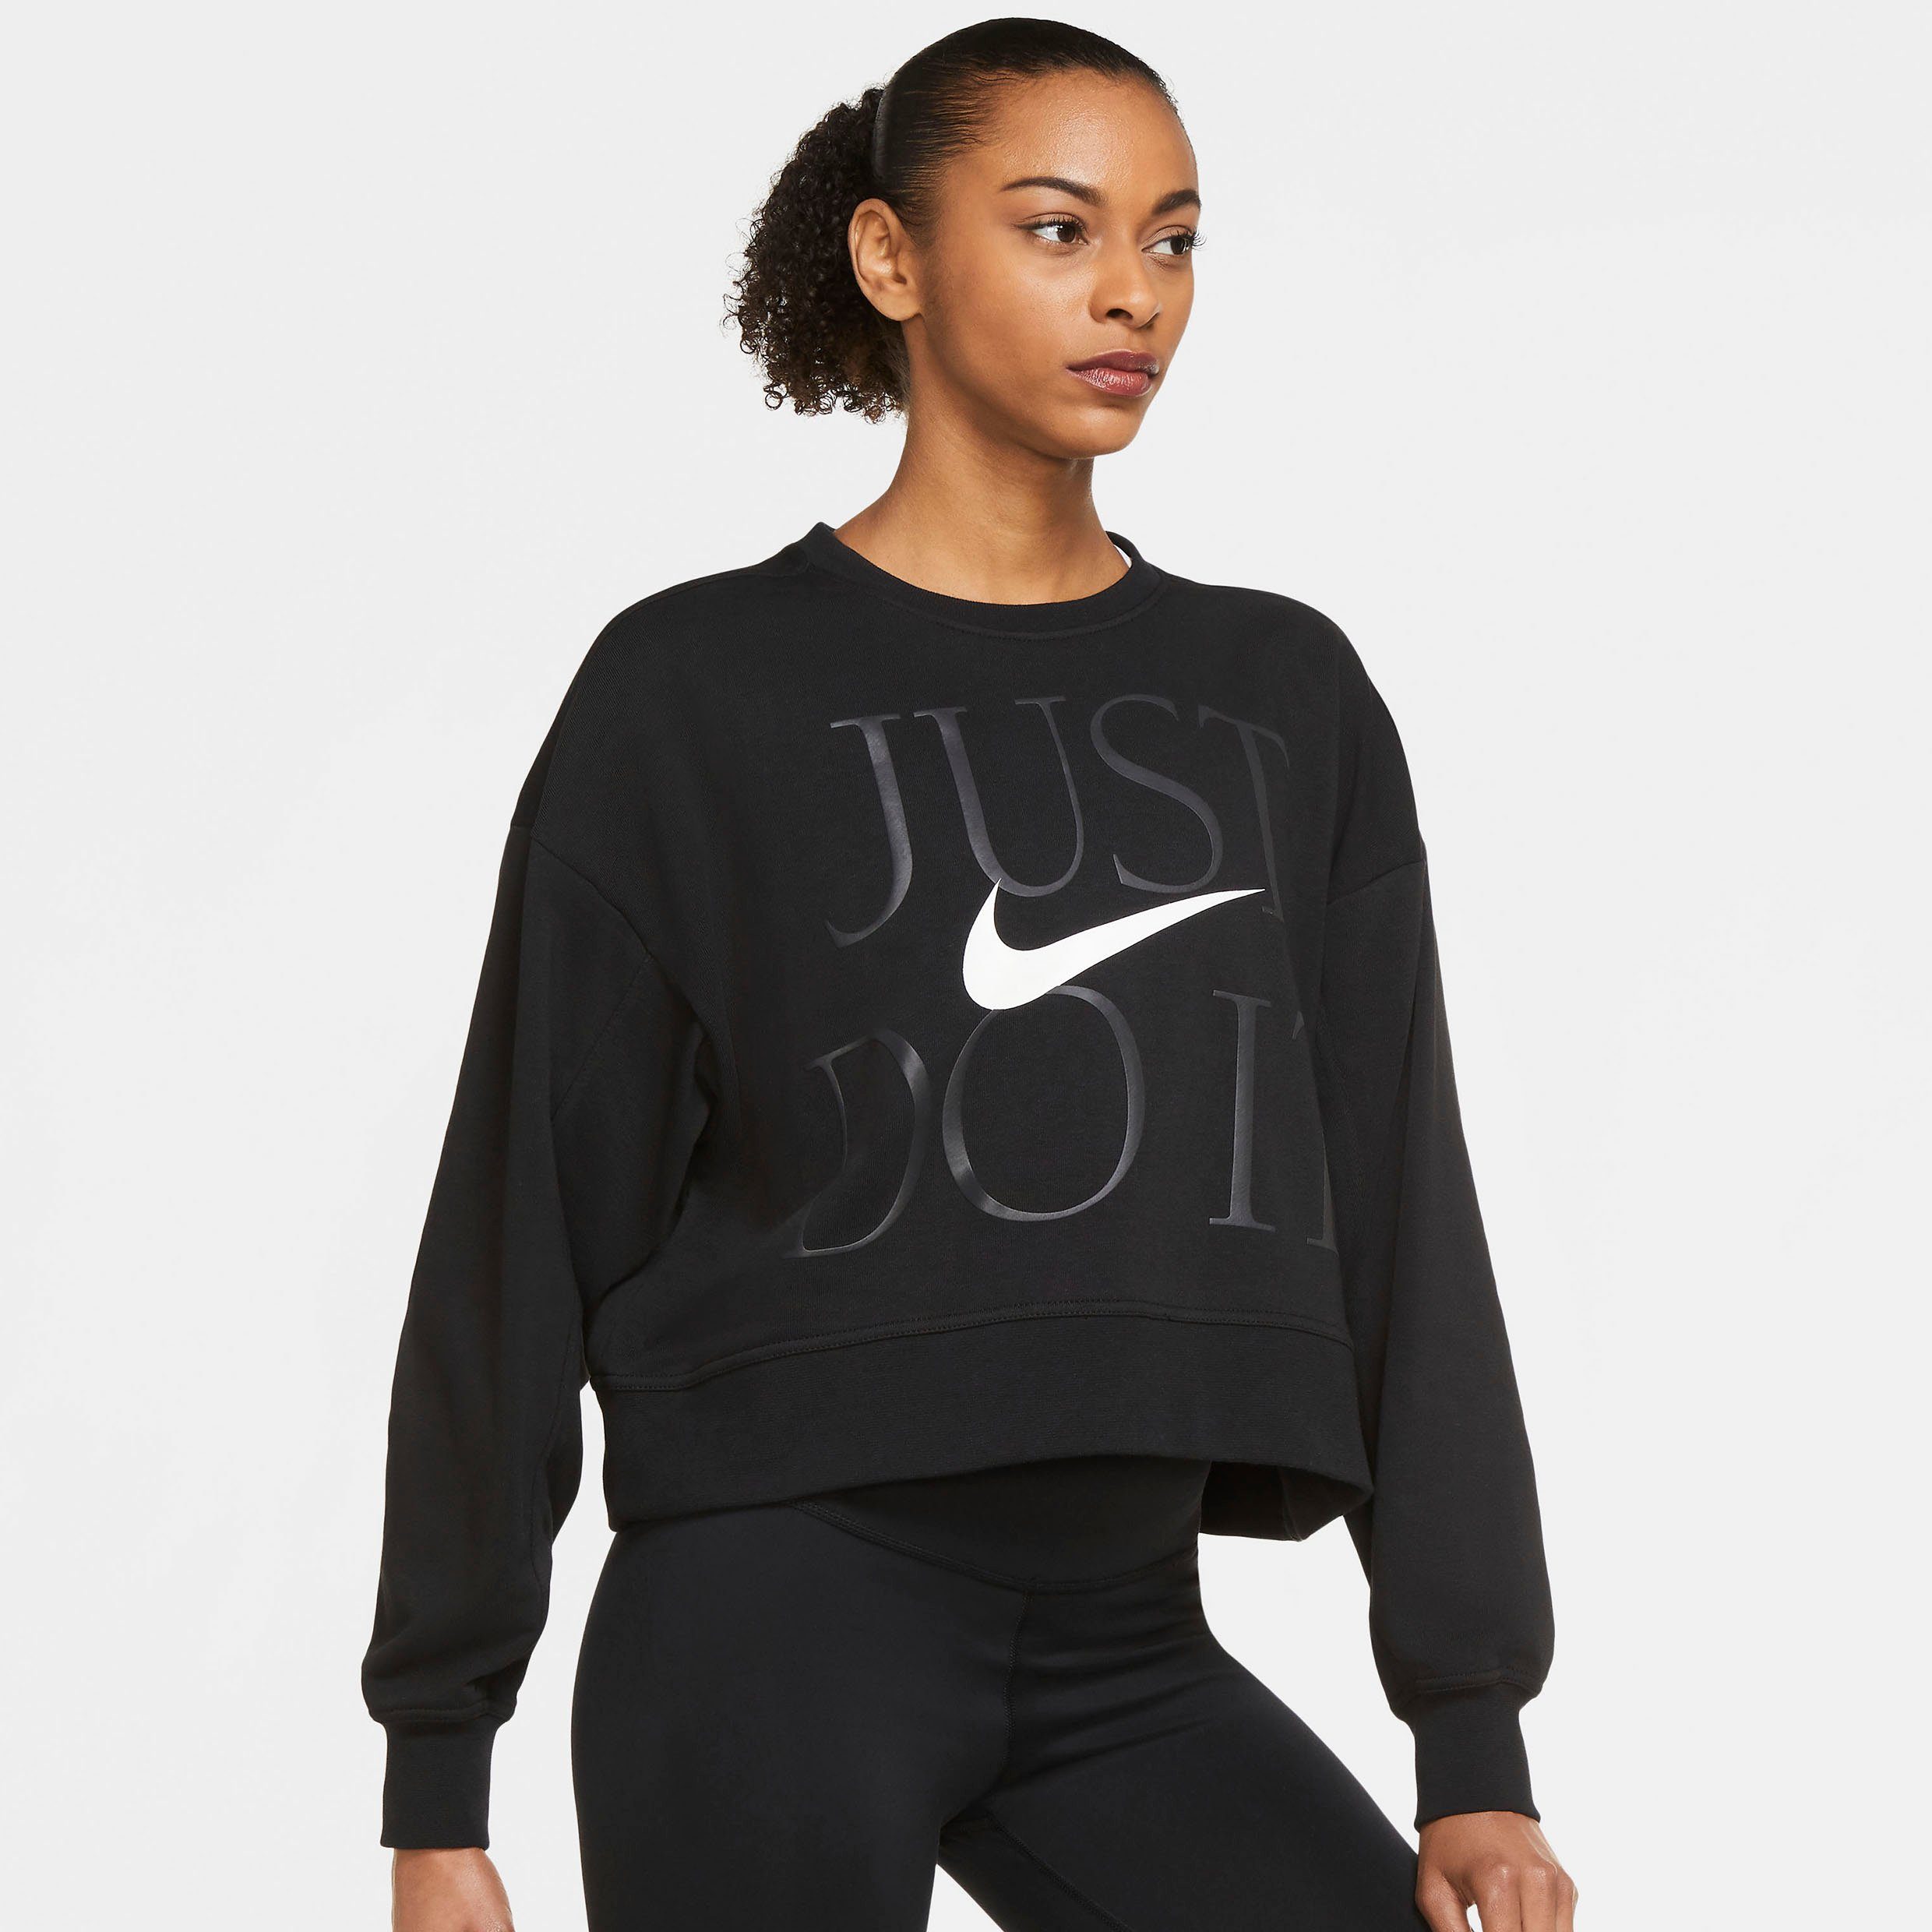 Nike Pullover online kaufen | OTTO